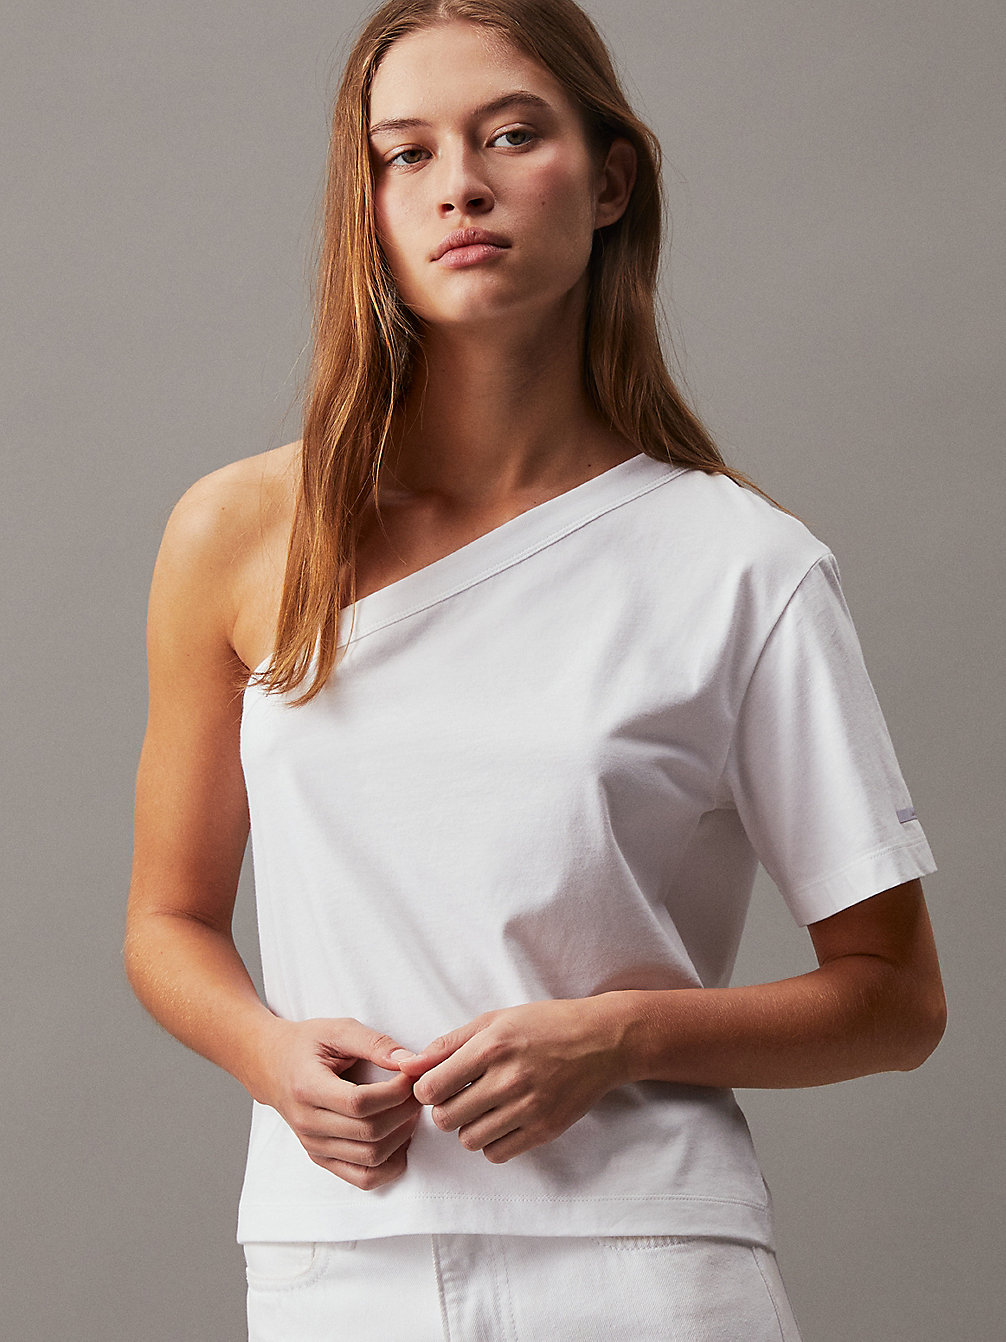 BRIGHT WHITE > One Shoulder Top > undefined Women - Calvin Klein